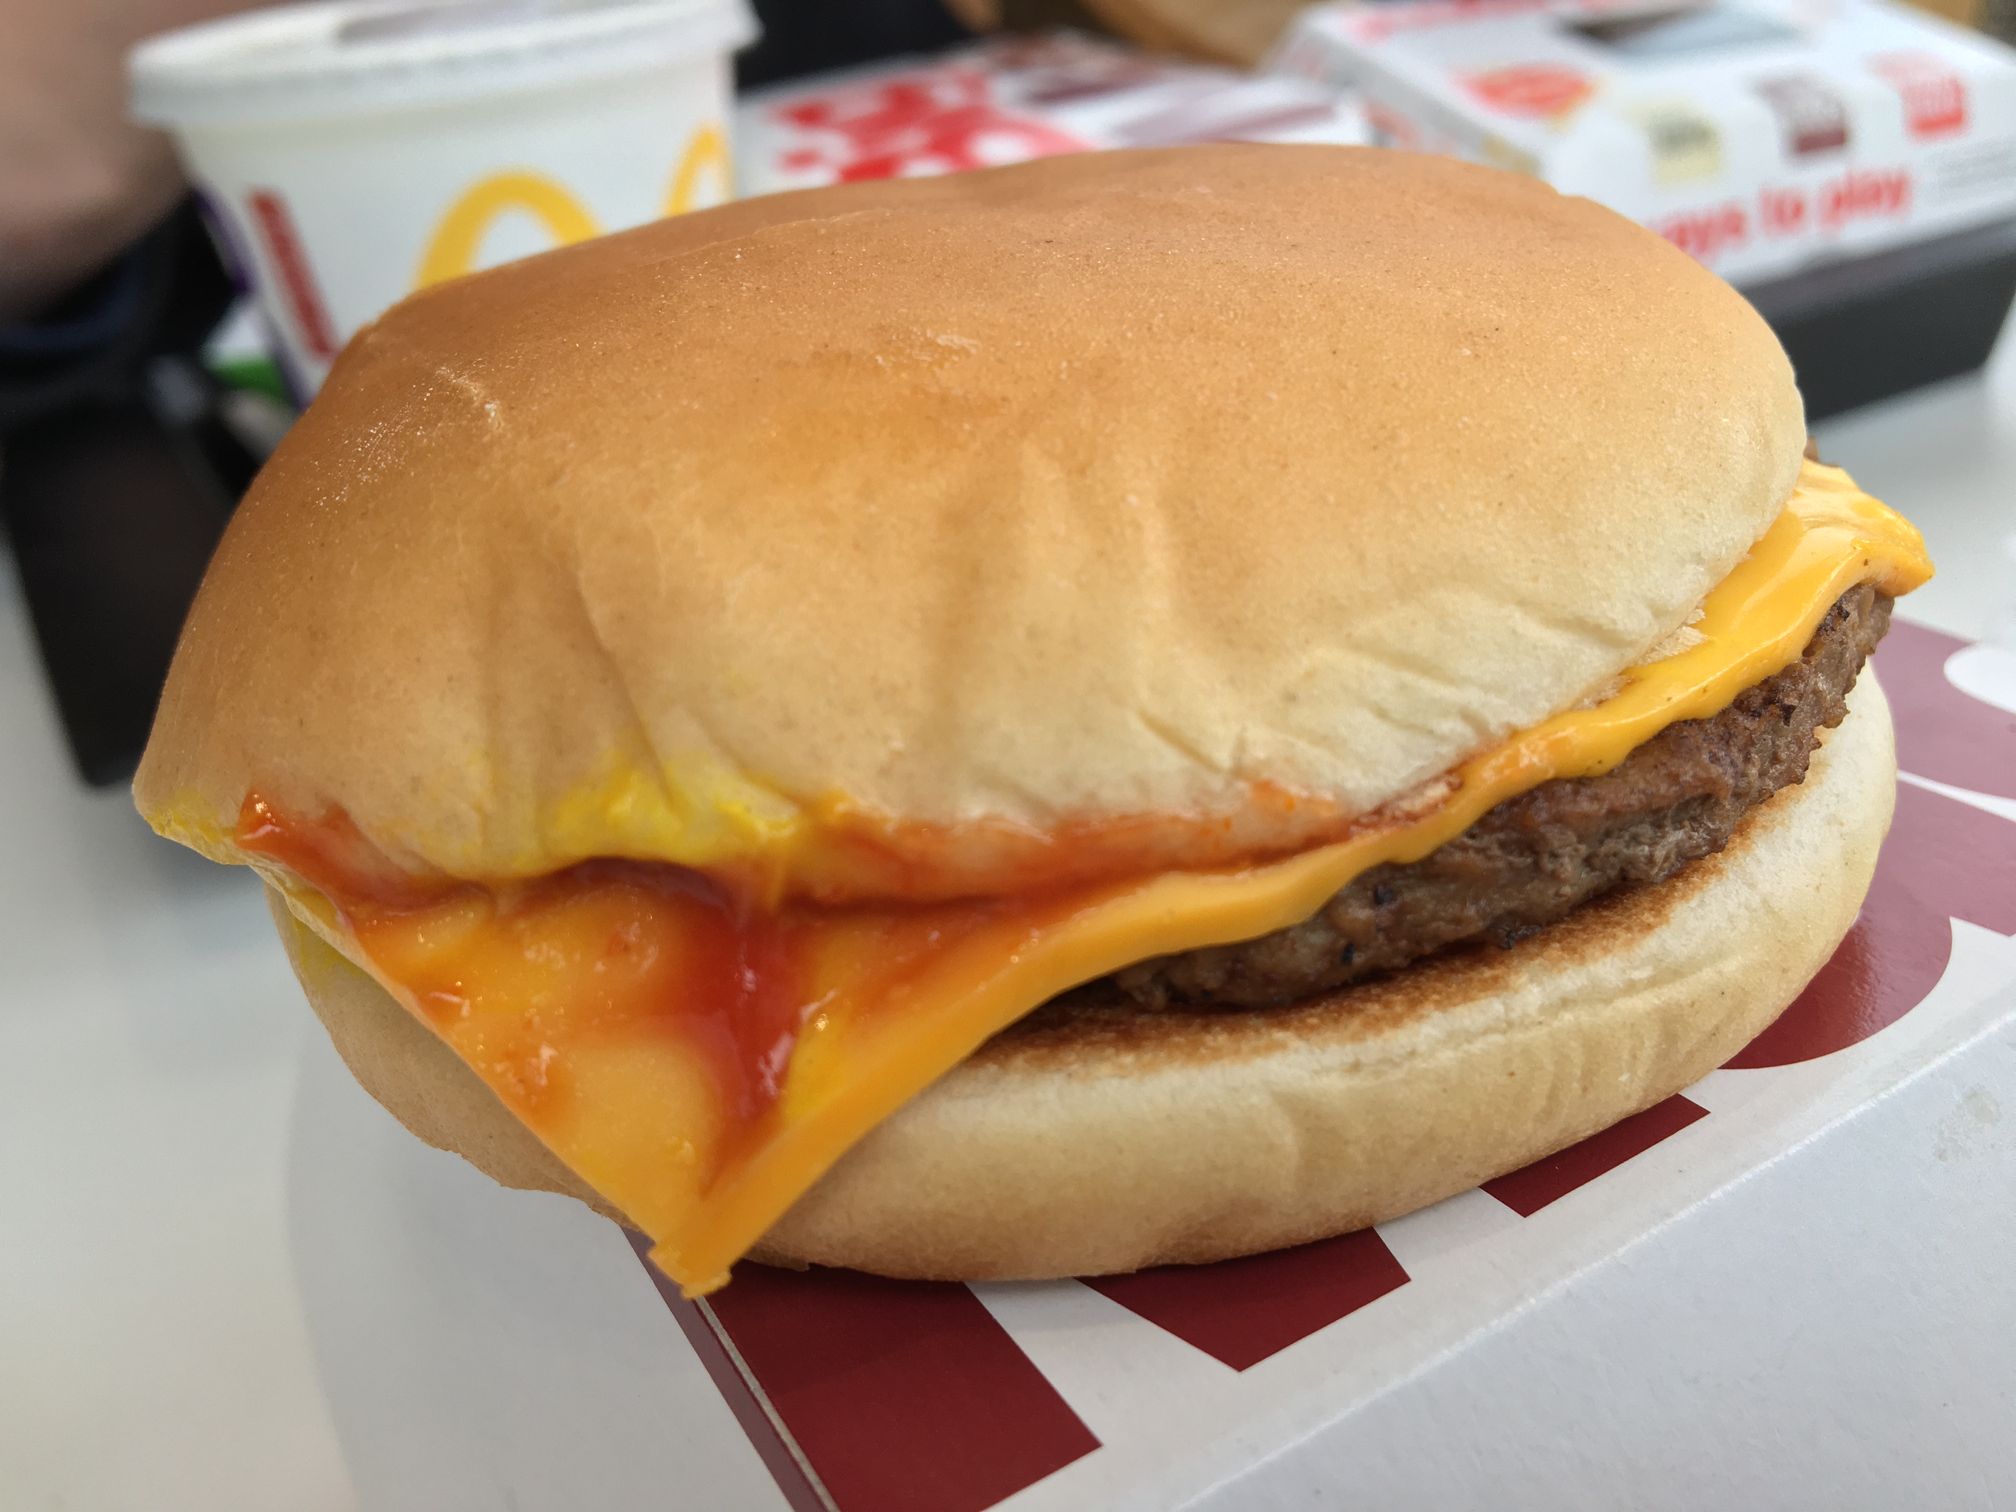 Mcd cheese burger McDonalds 2